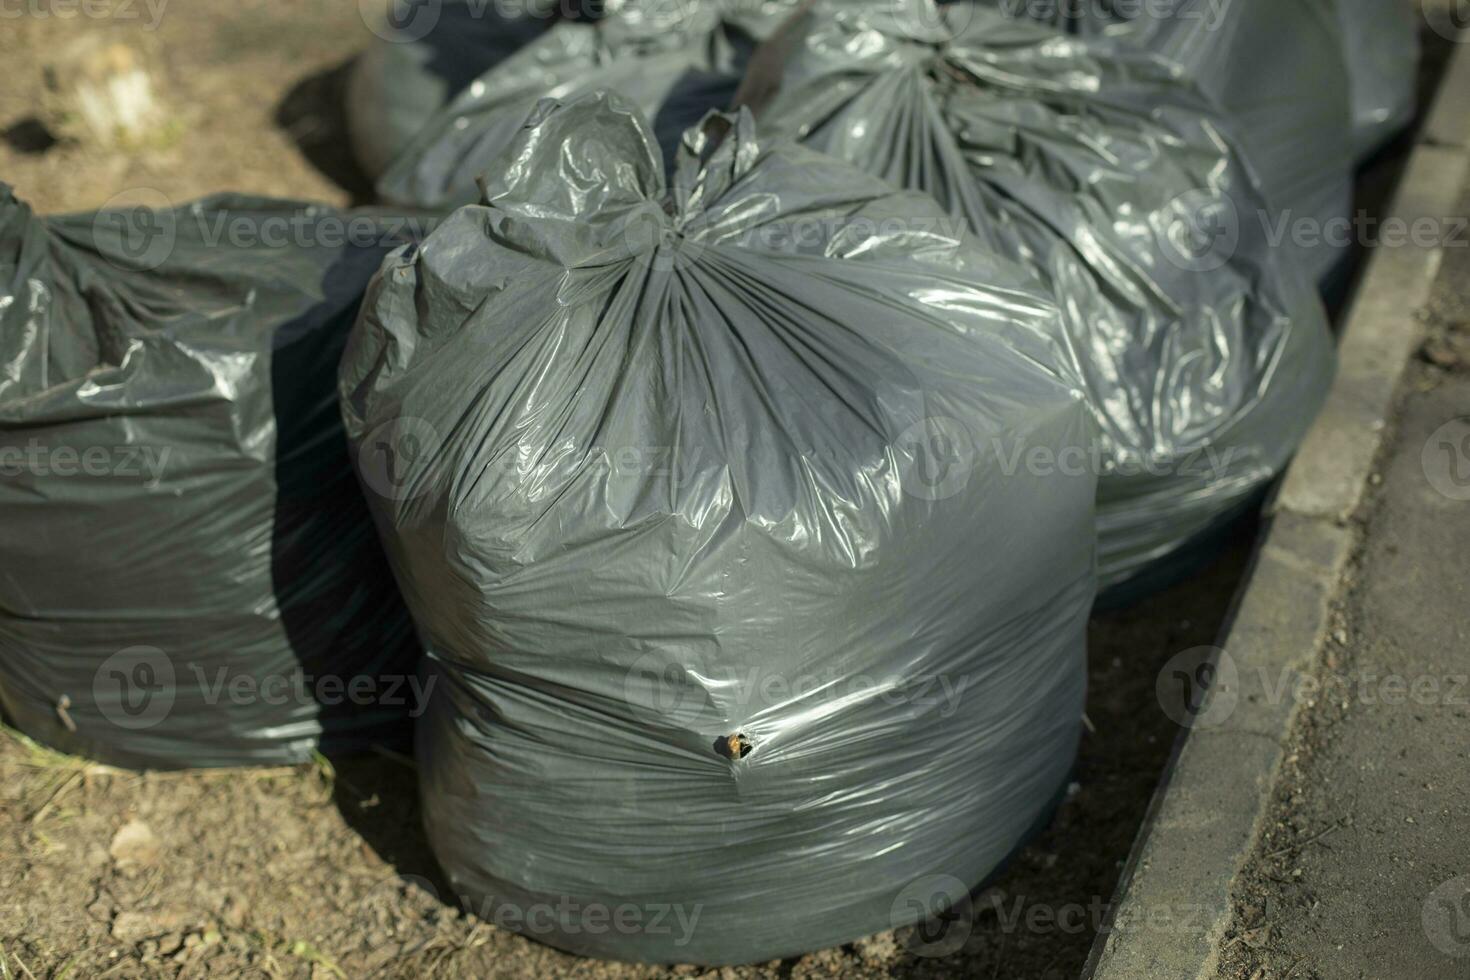 Ecoplast Centro - La bolsa de basura ha sido tradicionalmente de colores  preferentemente oscuros: negro, gris o azul marino. Sin embargo, la  implantación de la recogida selectiva de basura ha impulsado la